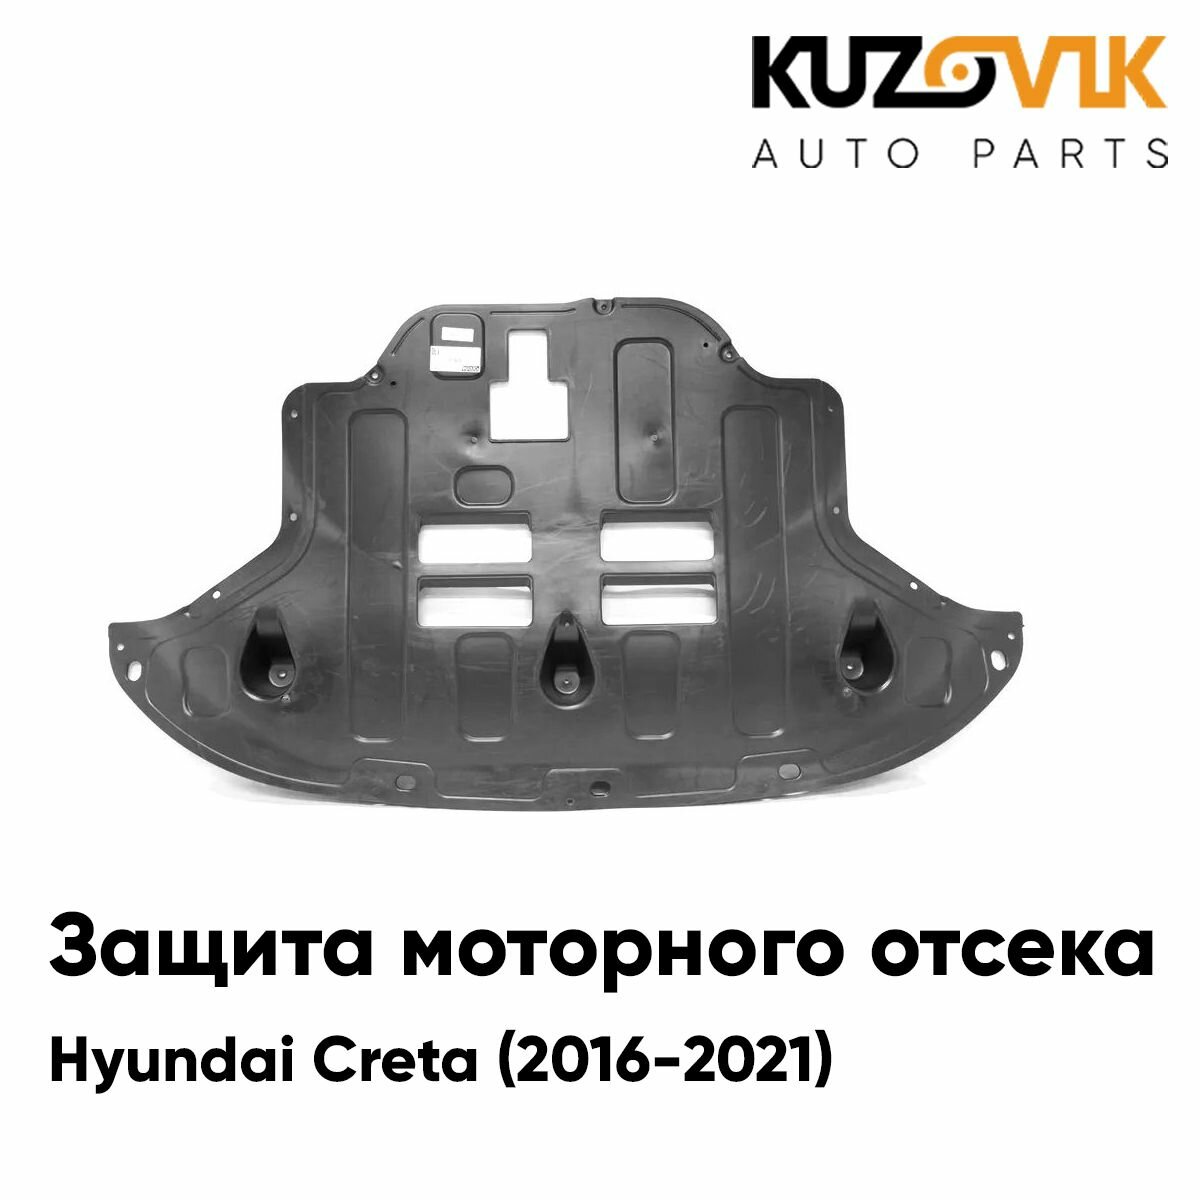 Пыльник защита моторного отсека двигателя для Хендай Крета Hyundai Creta (2016-2021) накладка дефлектор